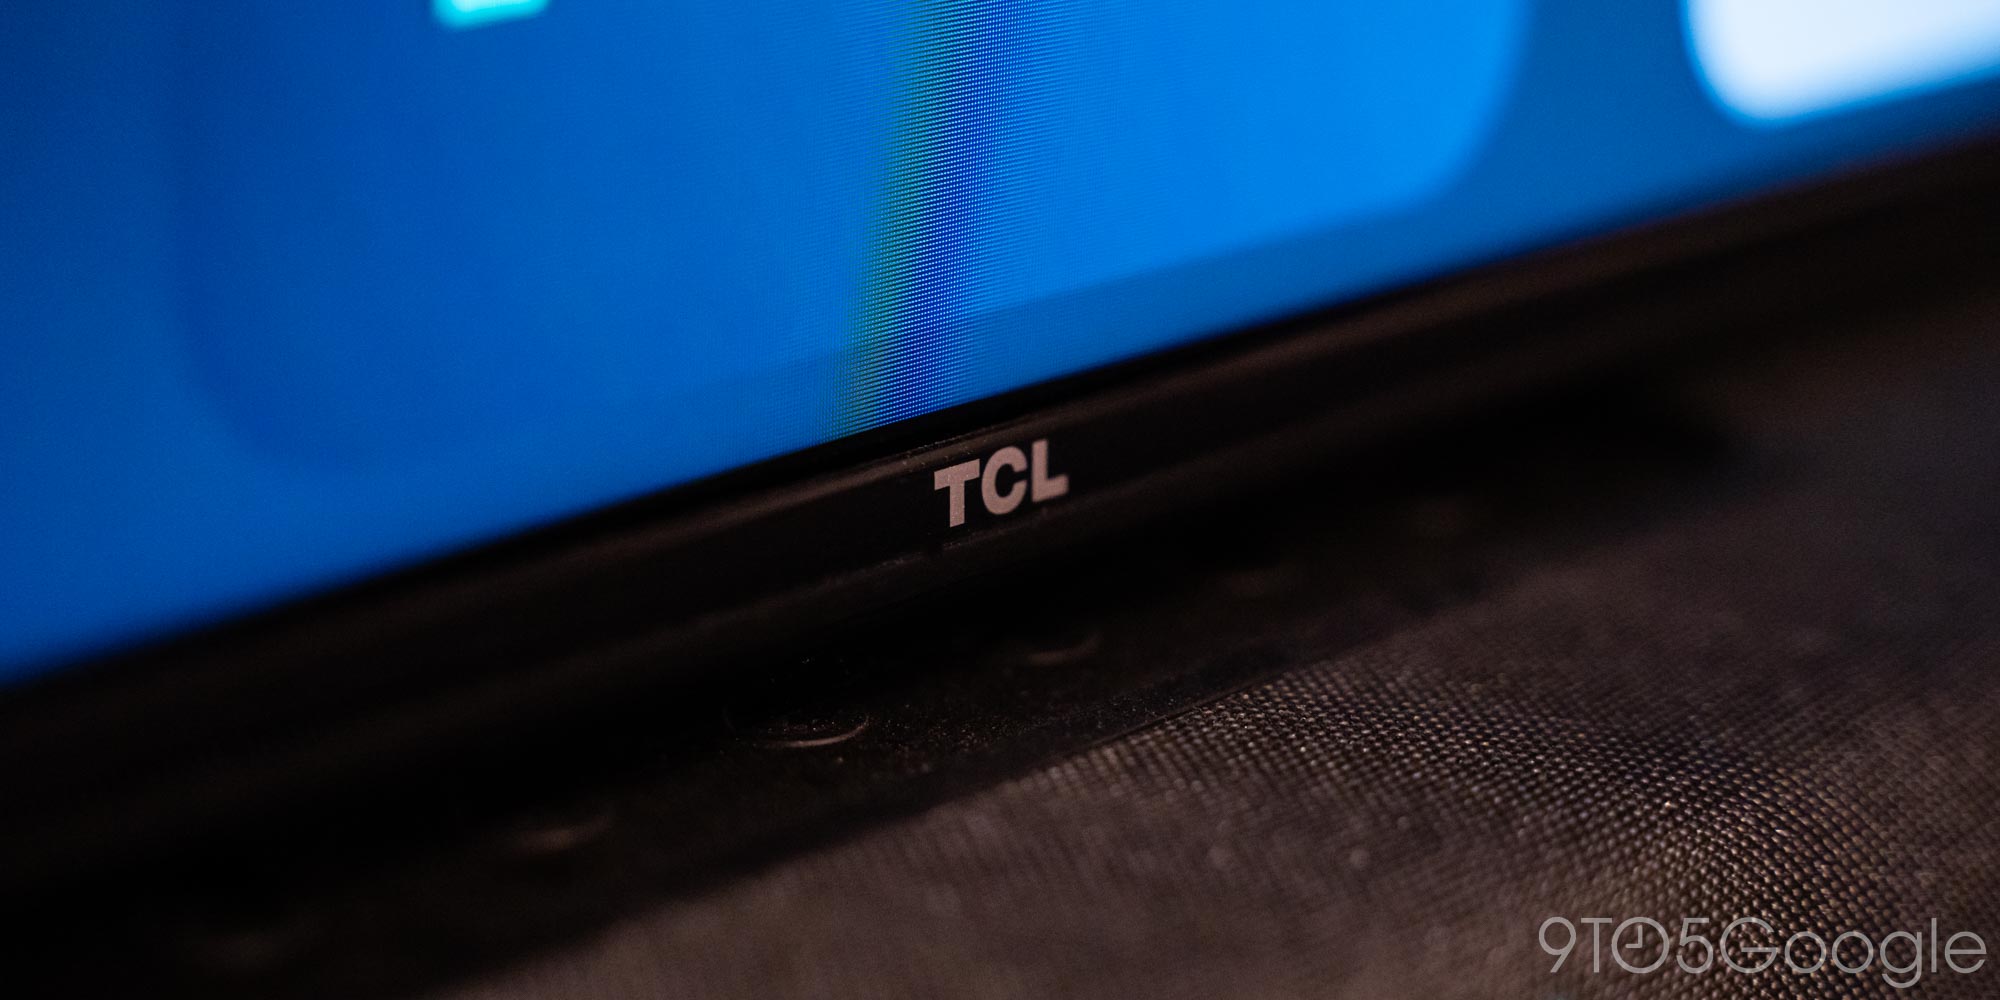 TCL - 43 Class S-Series LED 4K UHD Smart Google TV